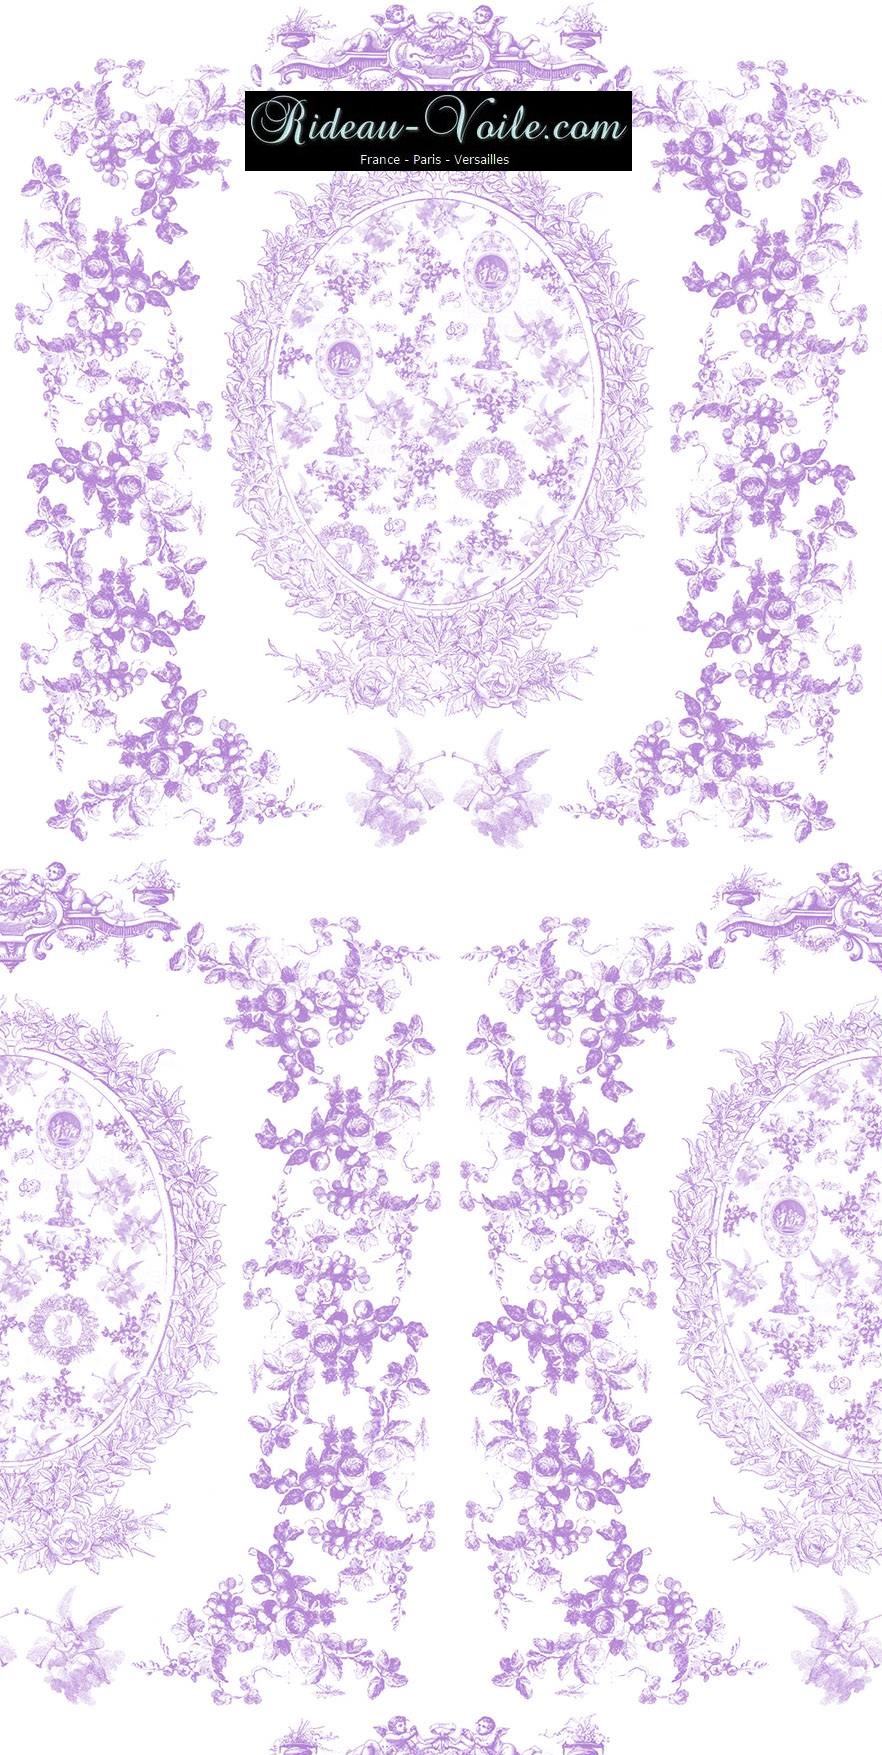 toile de jouy au mètre tissu Toile ameublement tapisserie textile agencement Paris Versailles haut de gamme french fabric meter tapestry upholstery home pattern  style Empire Yvelines motif imprimé violet purple lilas lilac